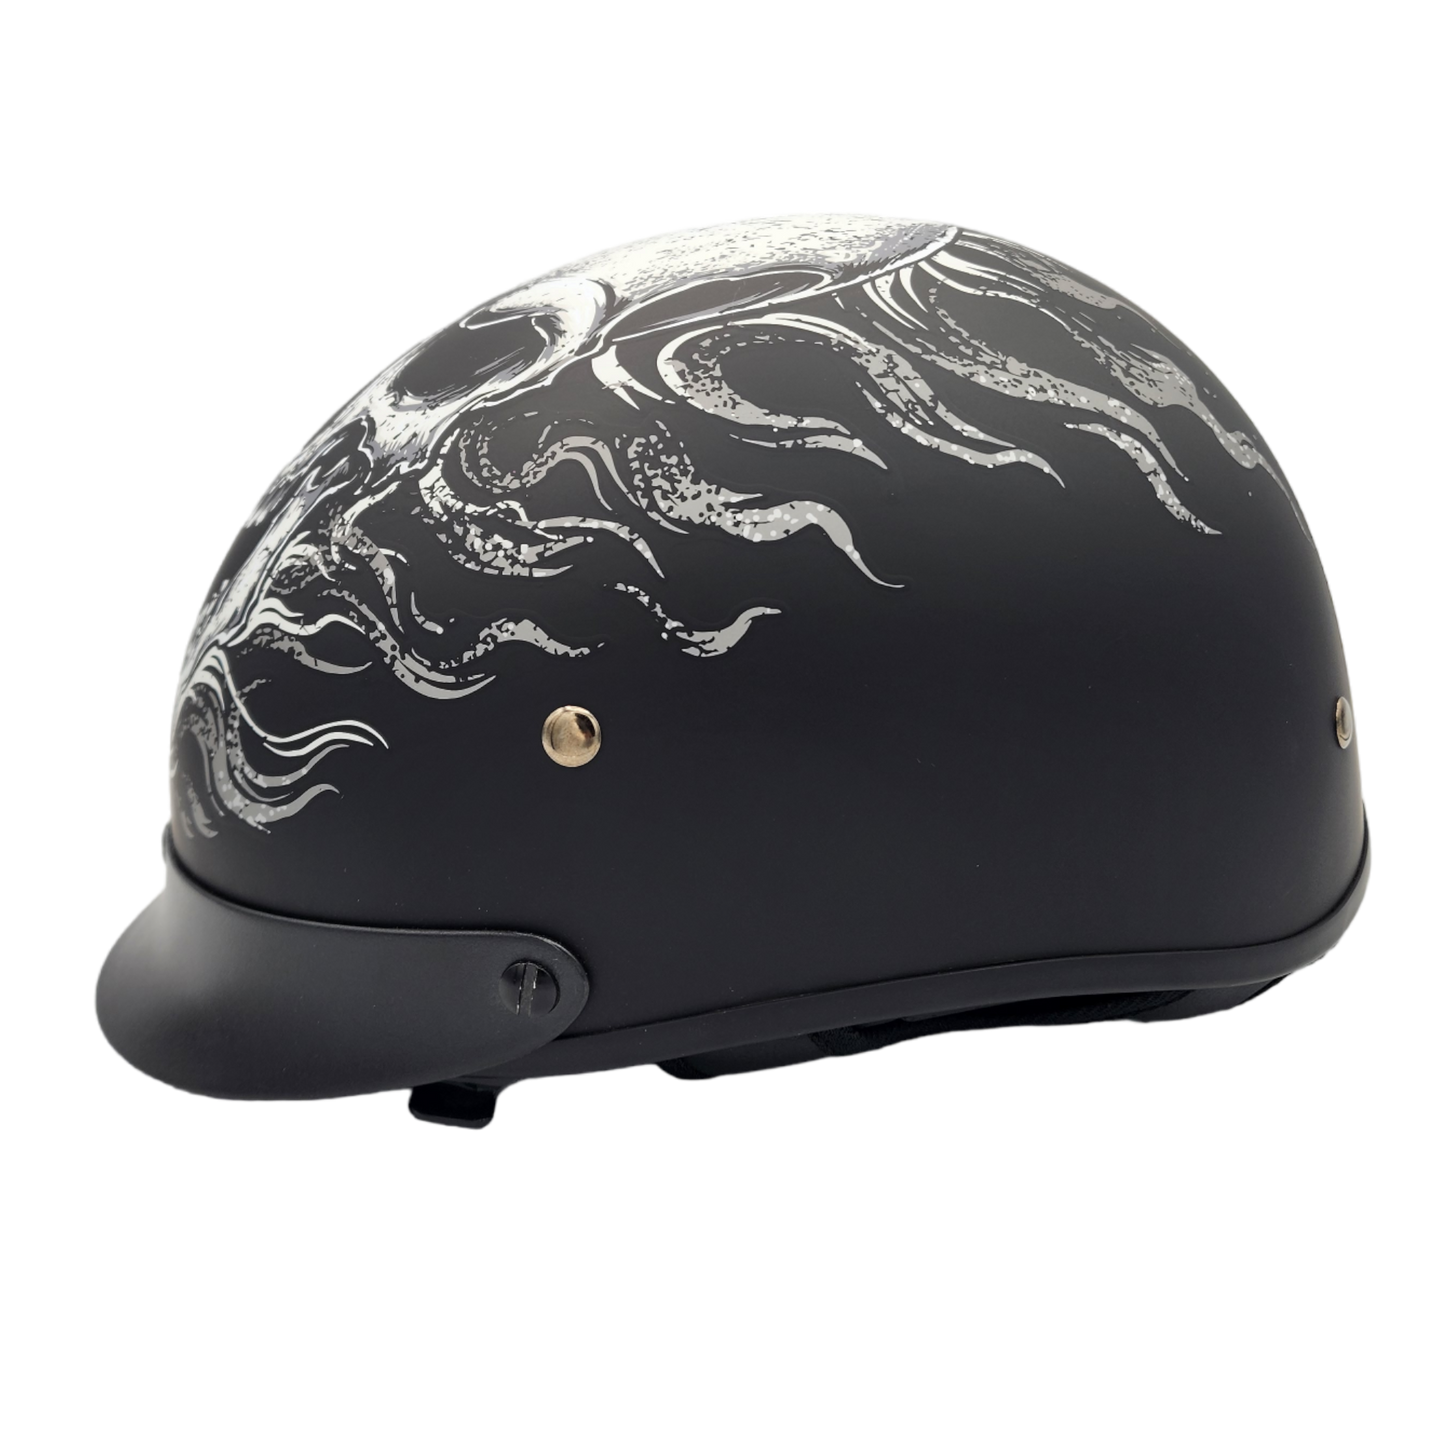 Vega Warrior Motorcycle Half Helmet - Flame Skull